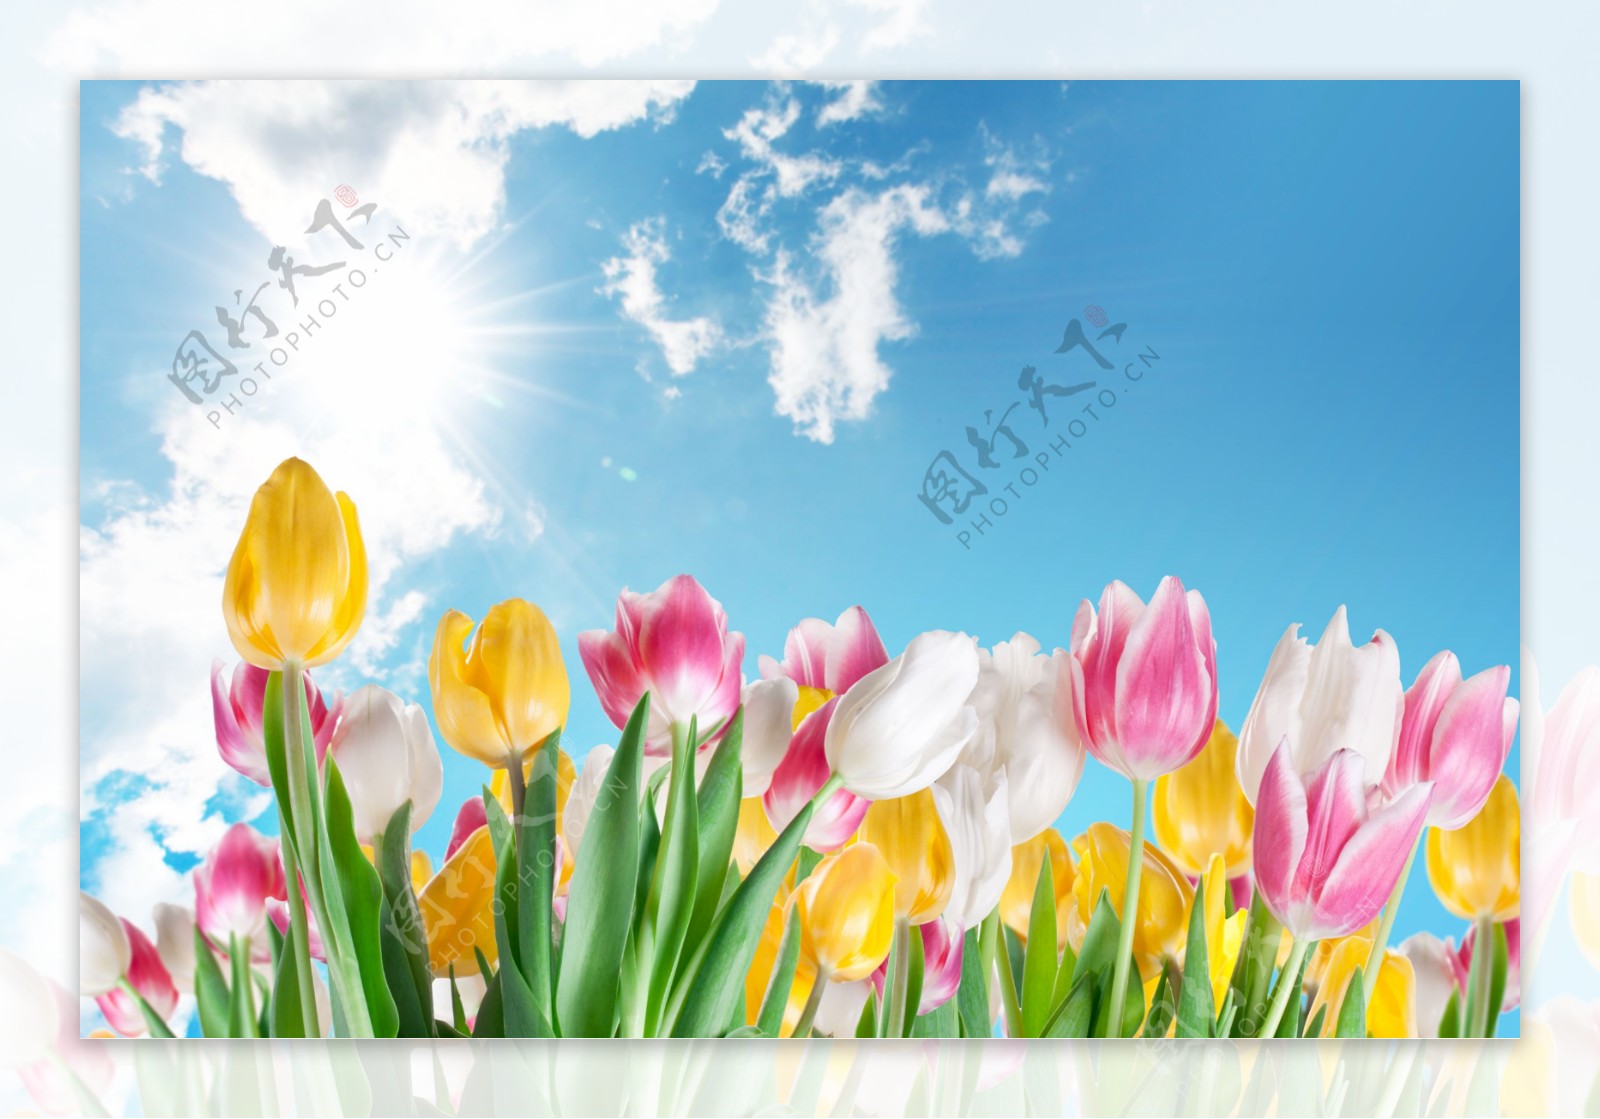 蓝天白云下的郁金香花朵图片